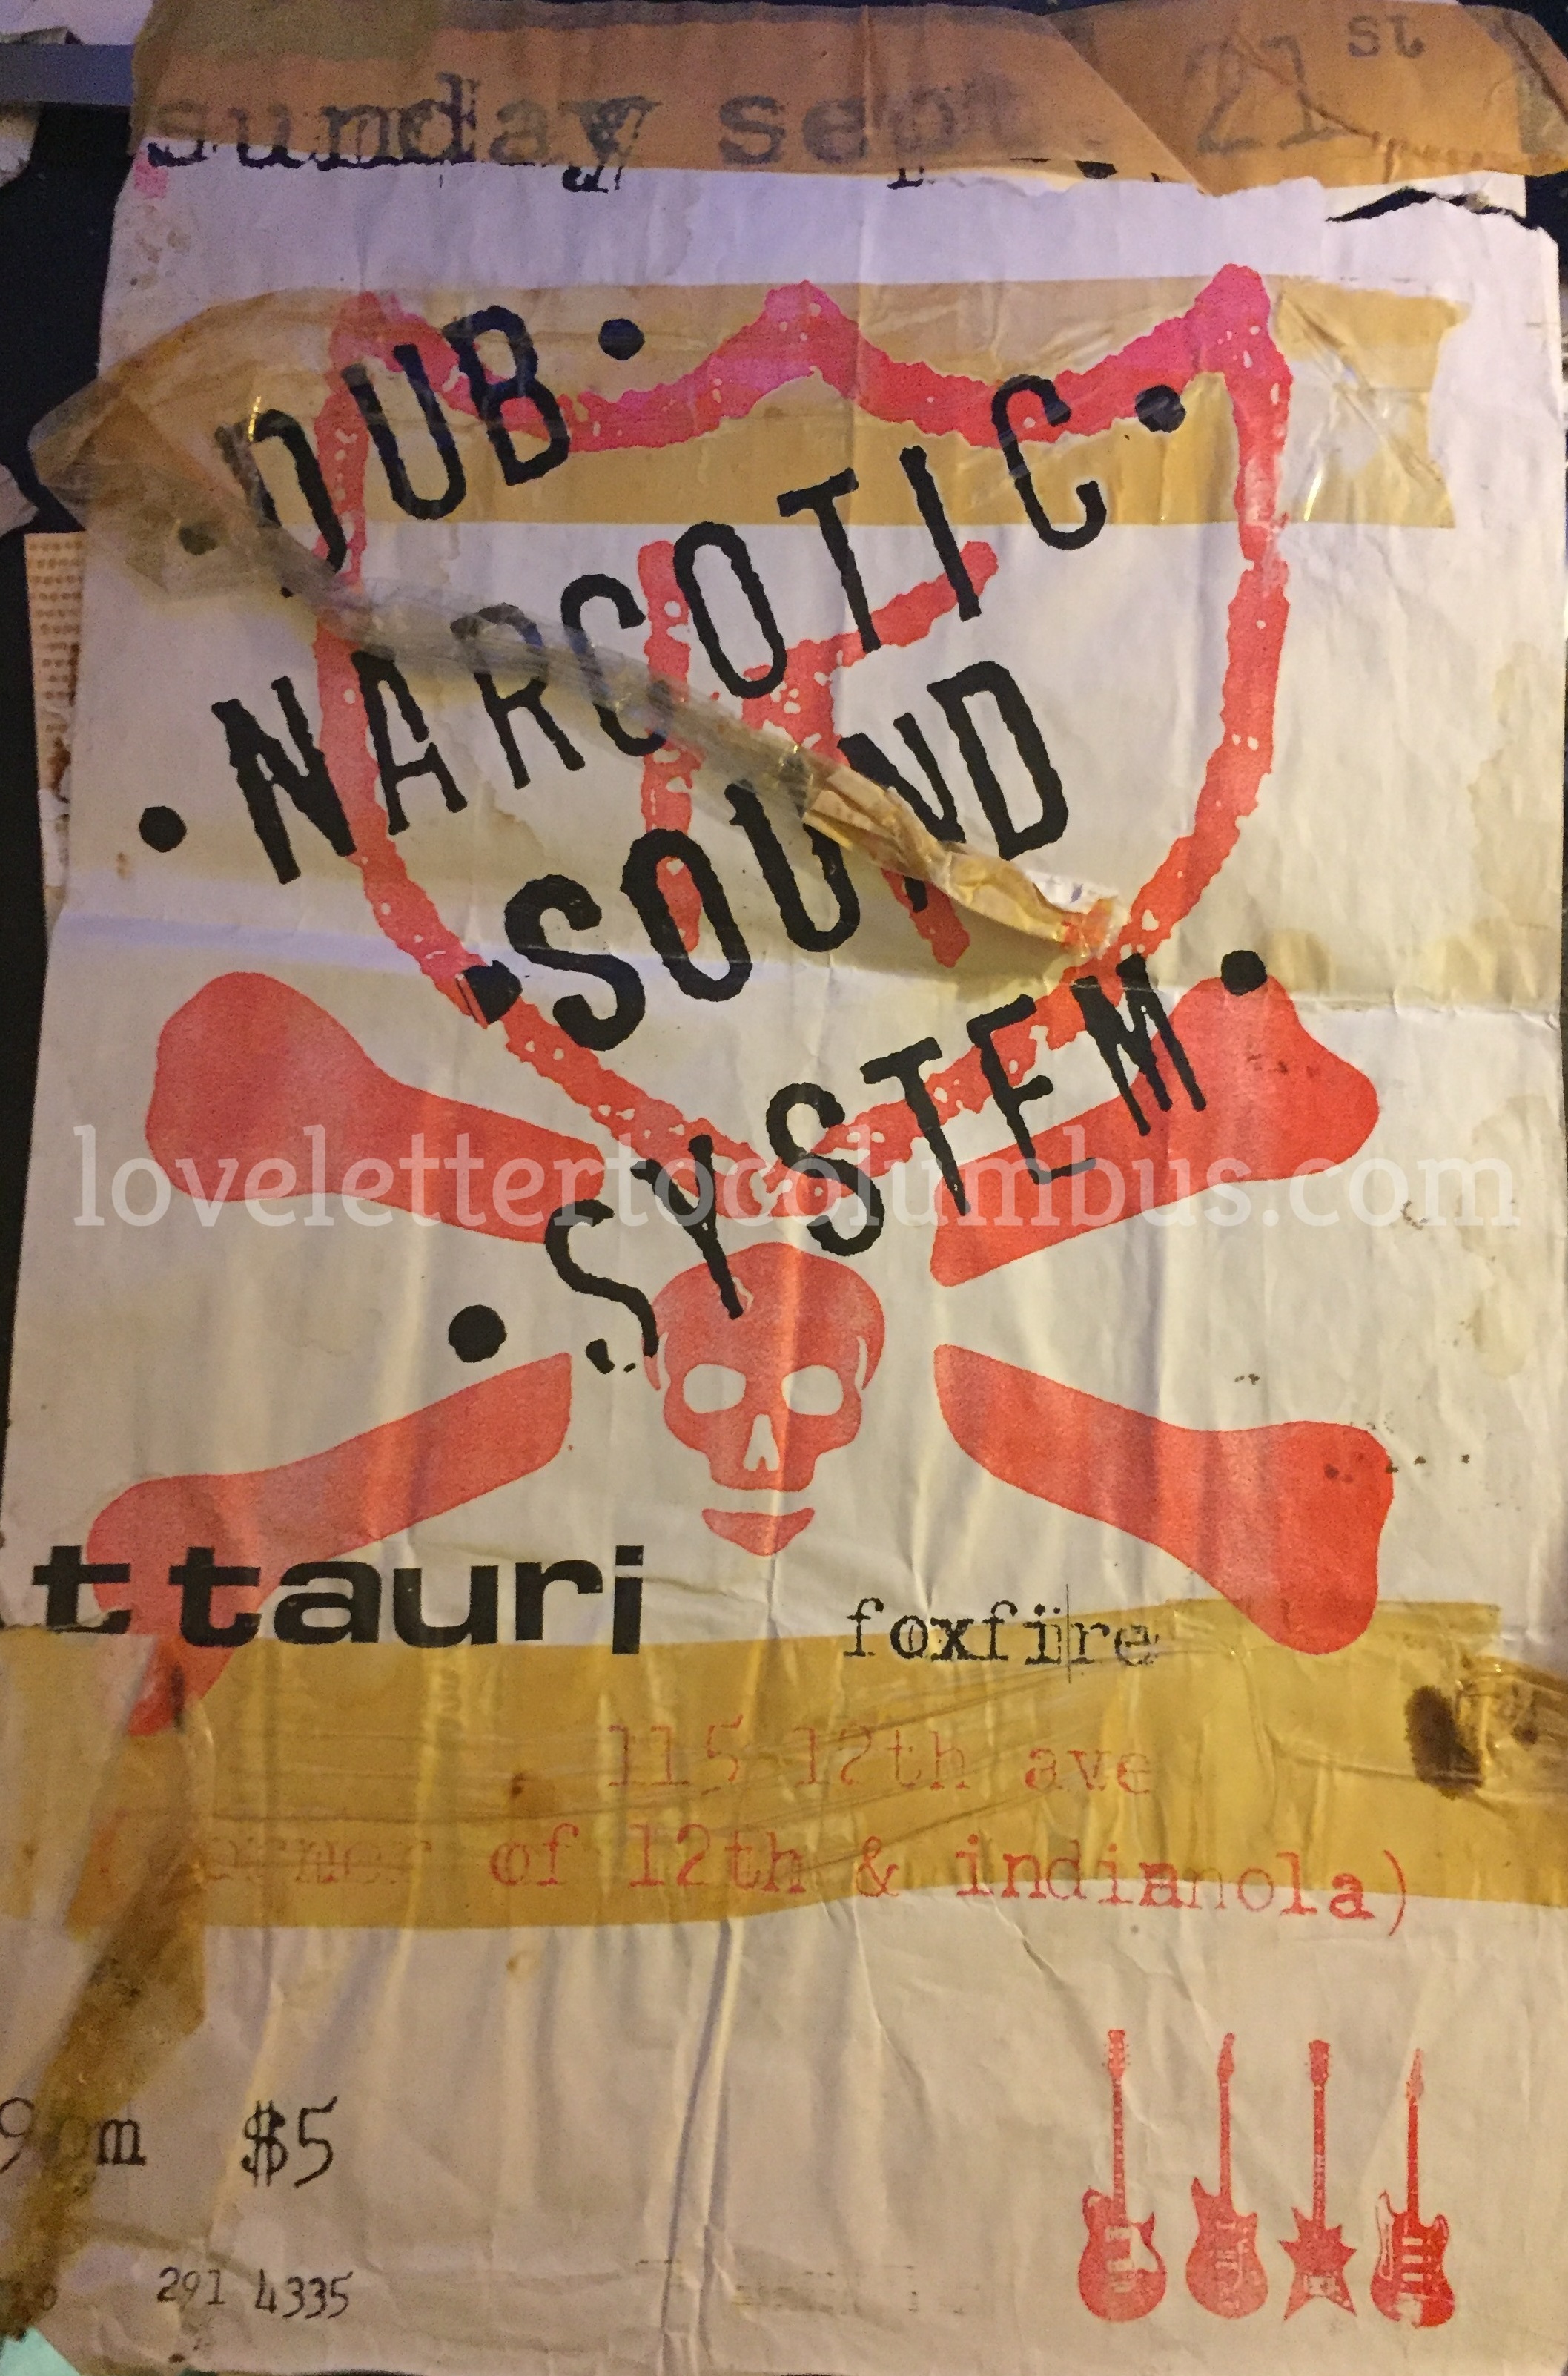 Dub-Narcotic-Columbus-Ohio-1997